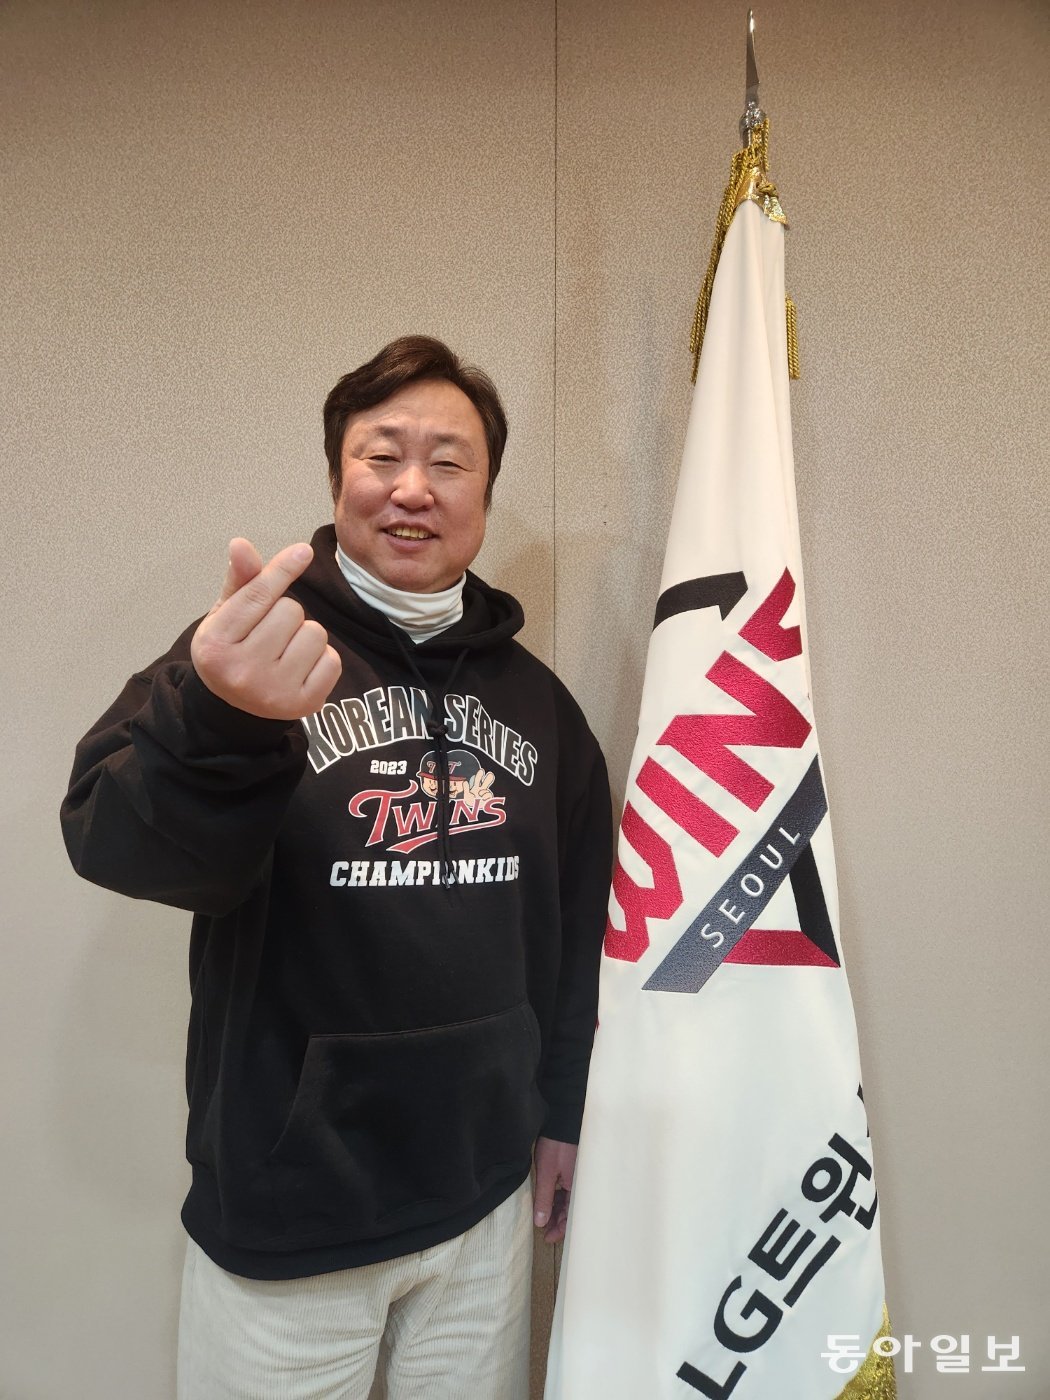 29년 만에 LG를 한국시리즈 우승으로 이끈 차명석 단장이 우승 티셔츠를 입고 손가락 하트를 들어보이고 있다. 이헌재 기자 uni@donga.com